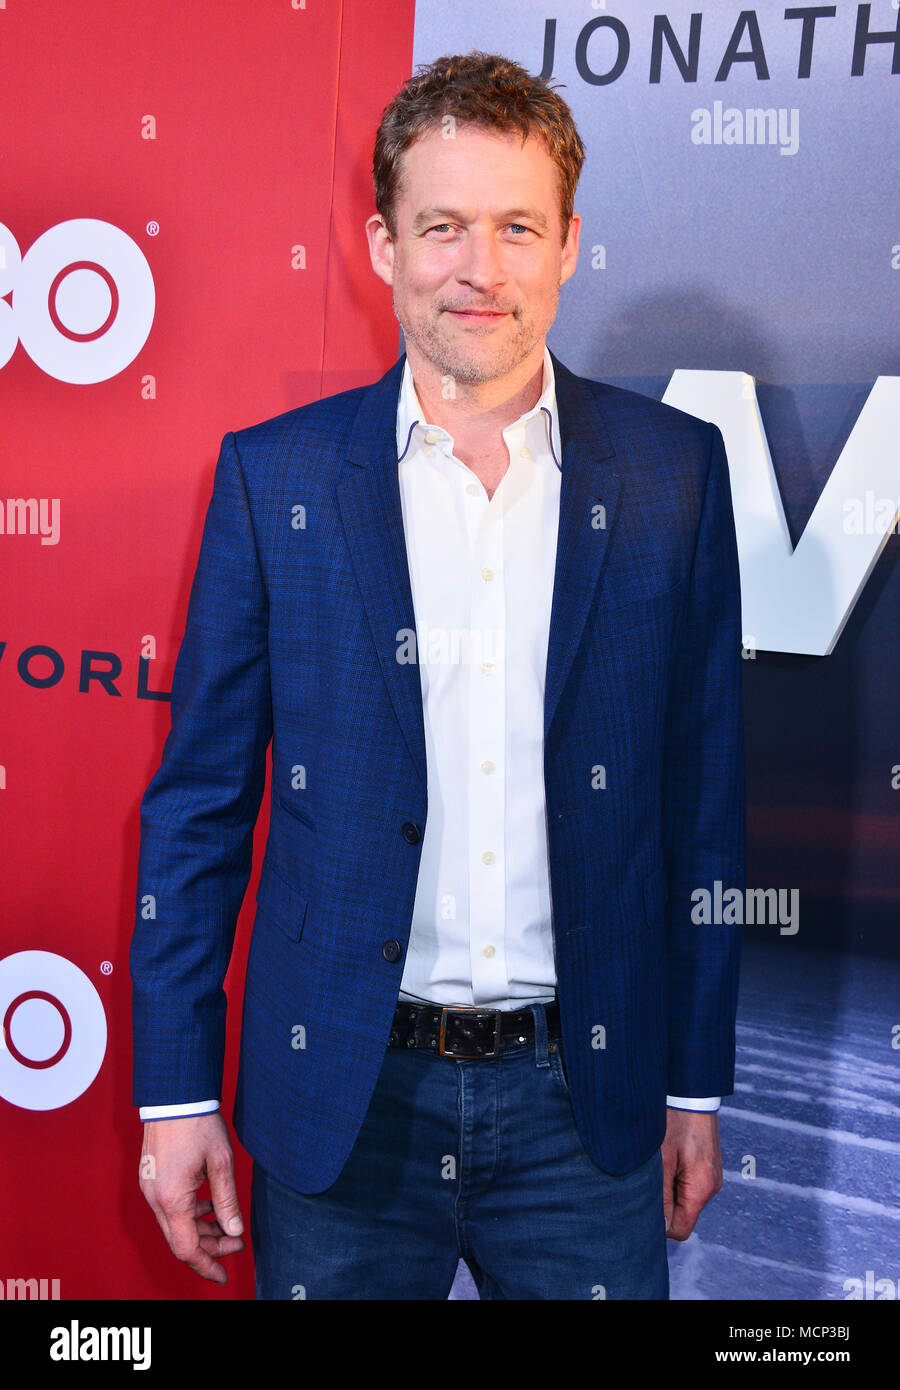 Los Angeles, Estados Unidos. 16 abr, 2018. James Tupper llega para el estreno de HBO 'Westworld' Temporada 2 celebrada en El Cinerama Dome el 16 de abril de 2018, en Los Angeles, California. Crédito: Tsuni / USA/Alamy Live News Foto de stock